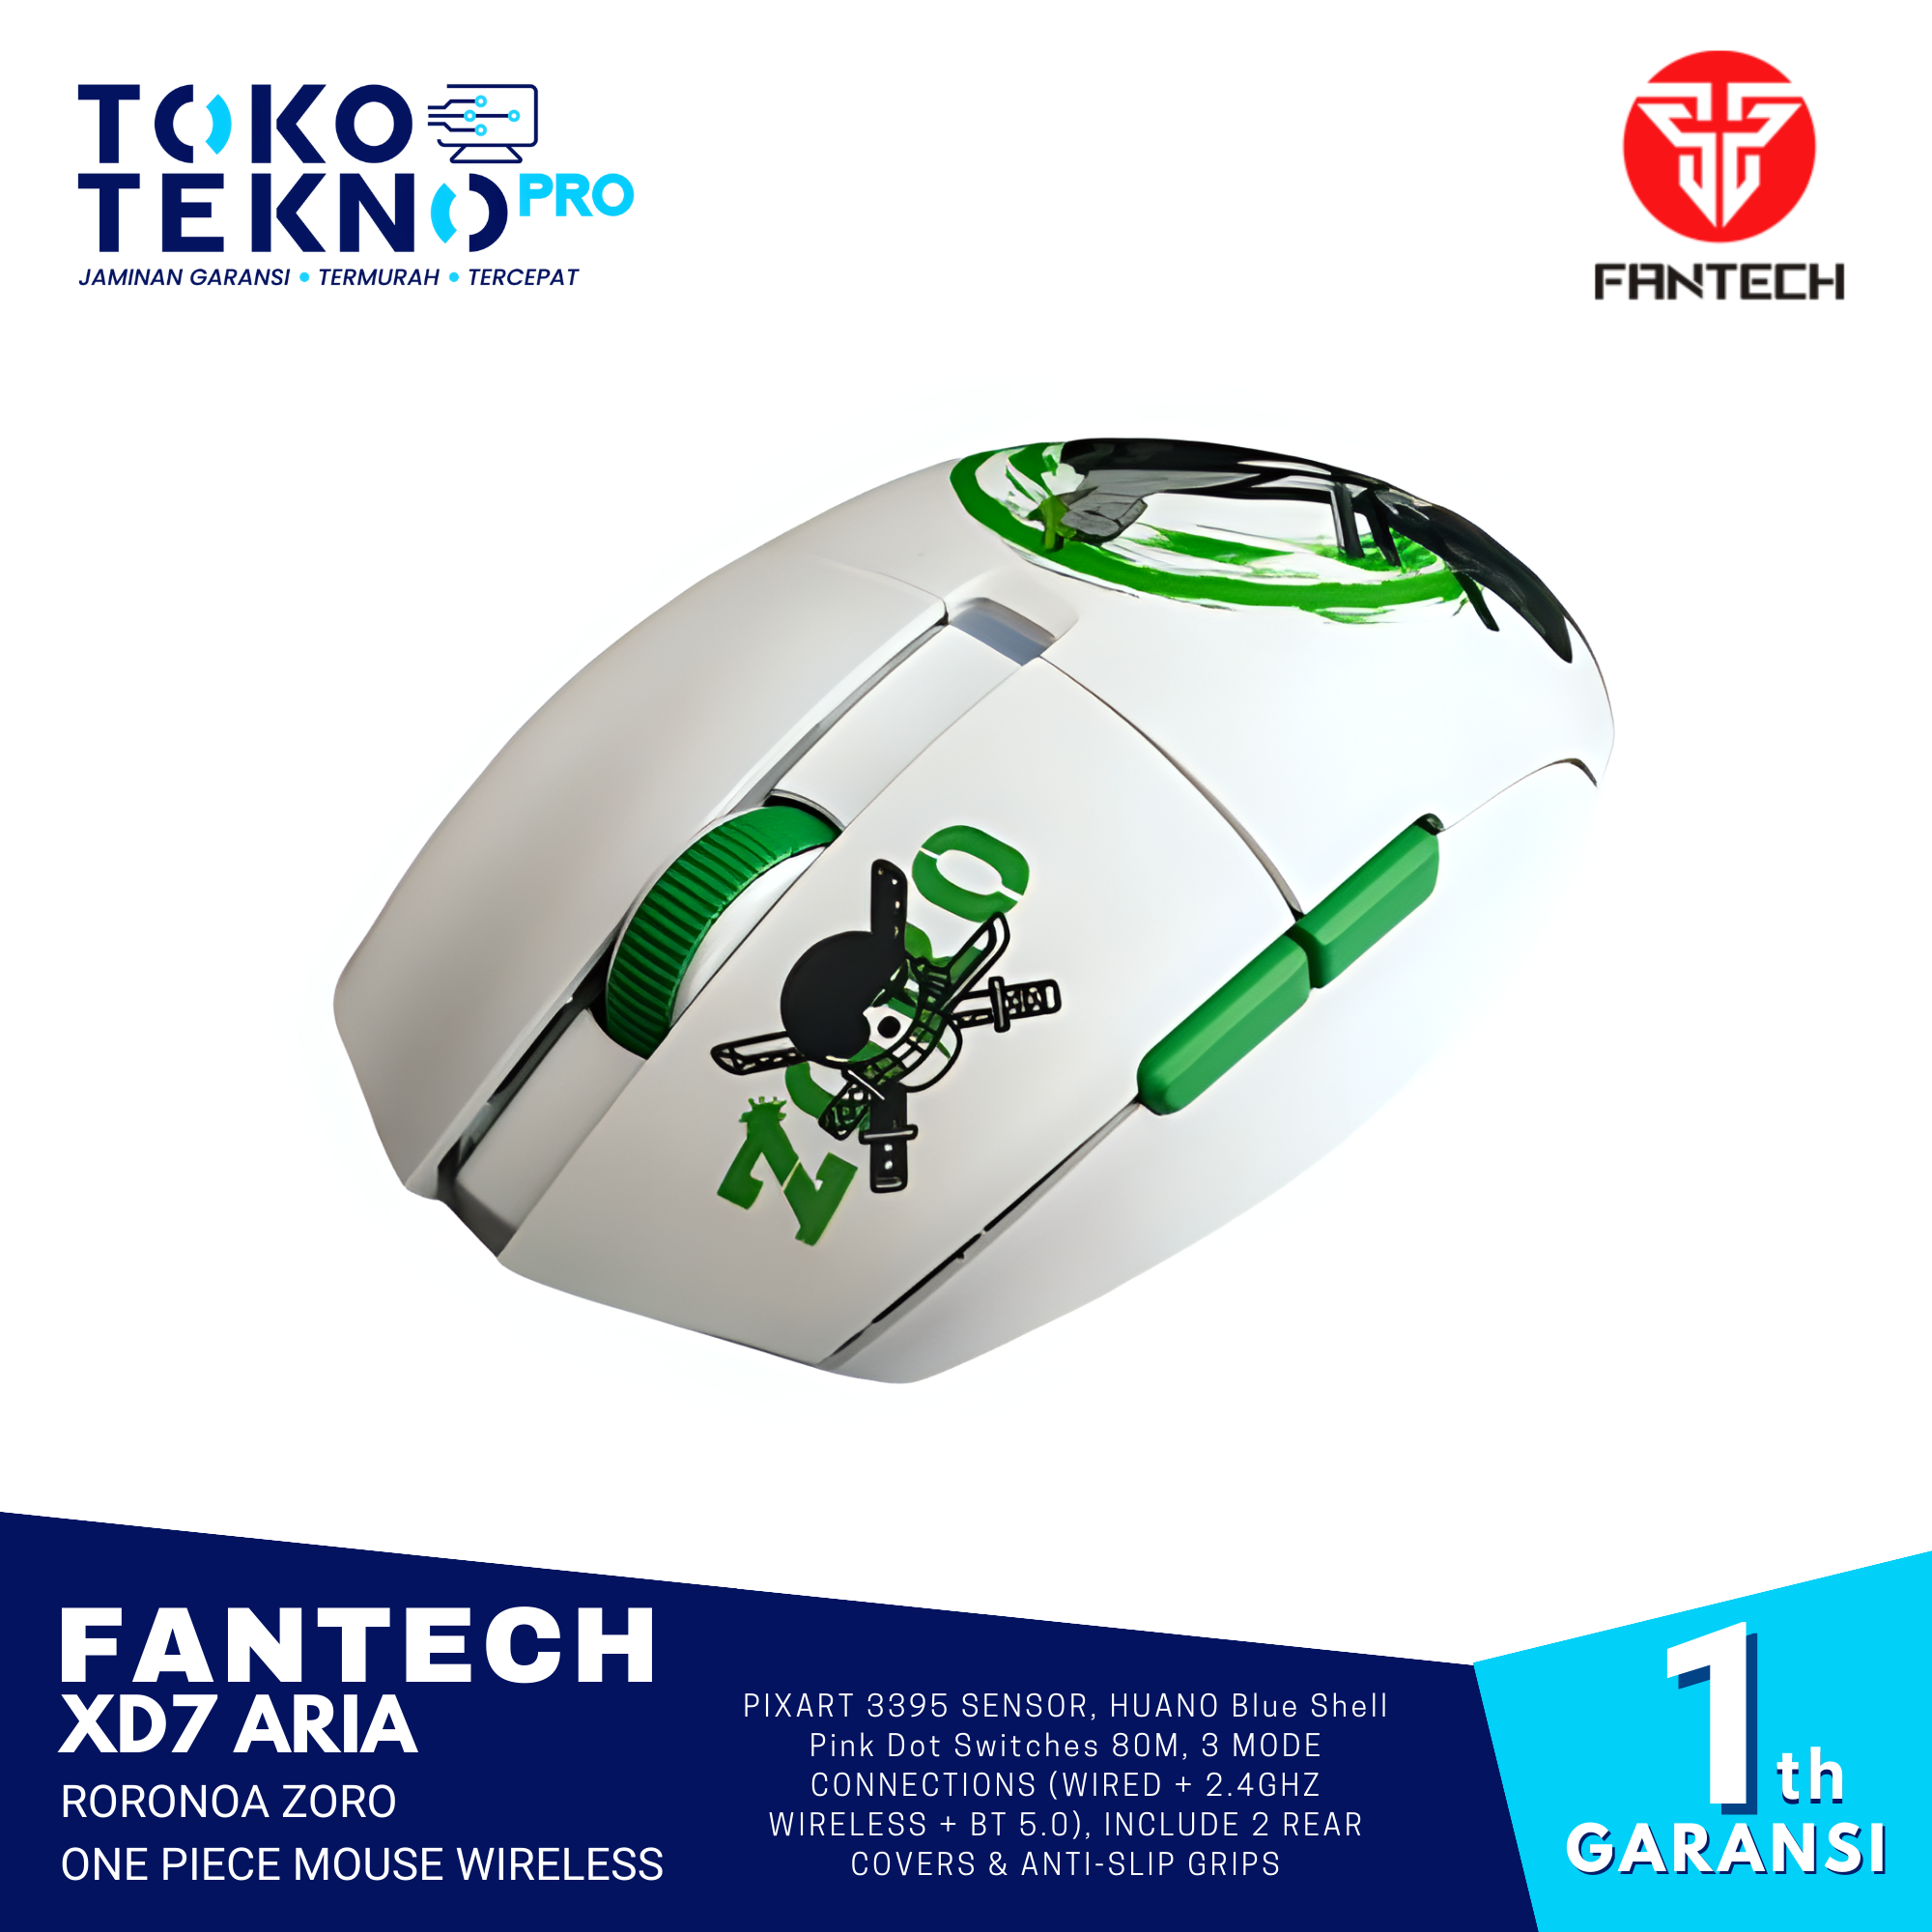 Fantech XD7 Aria Roronoa Zoro One Piece Mouse Wireless Gaming